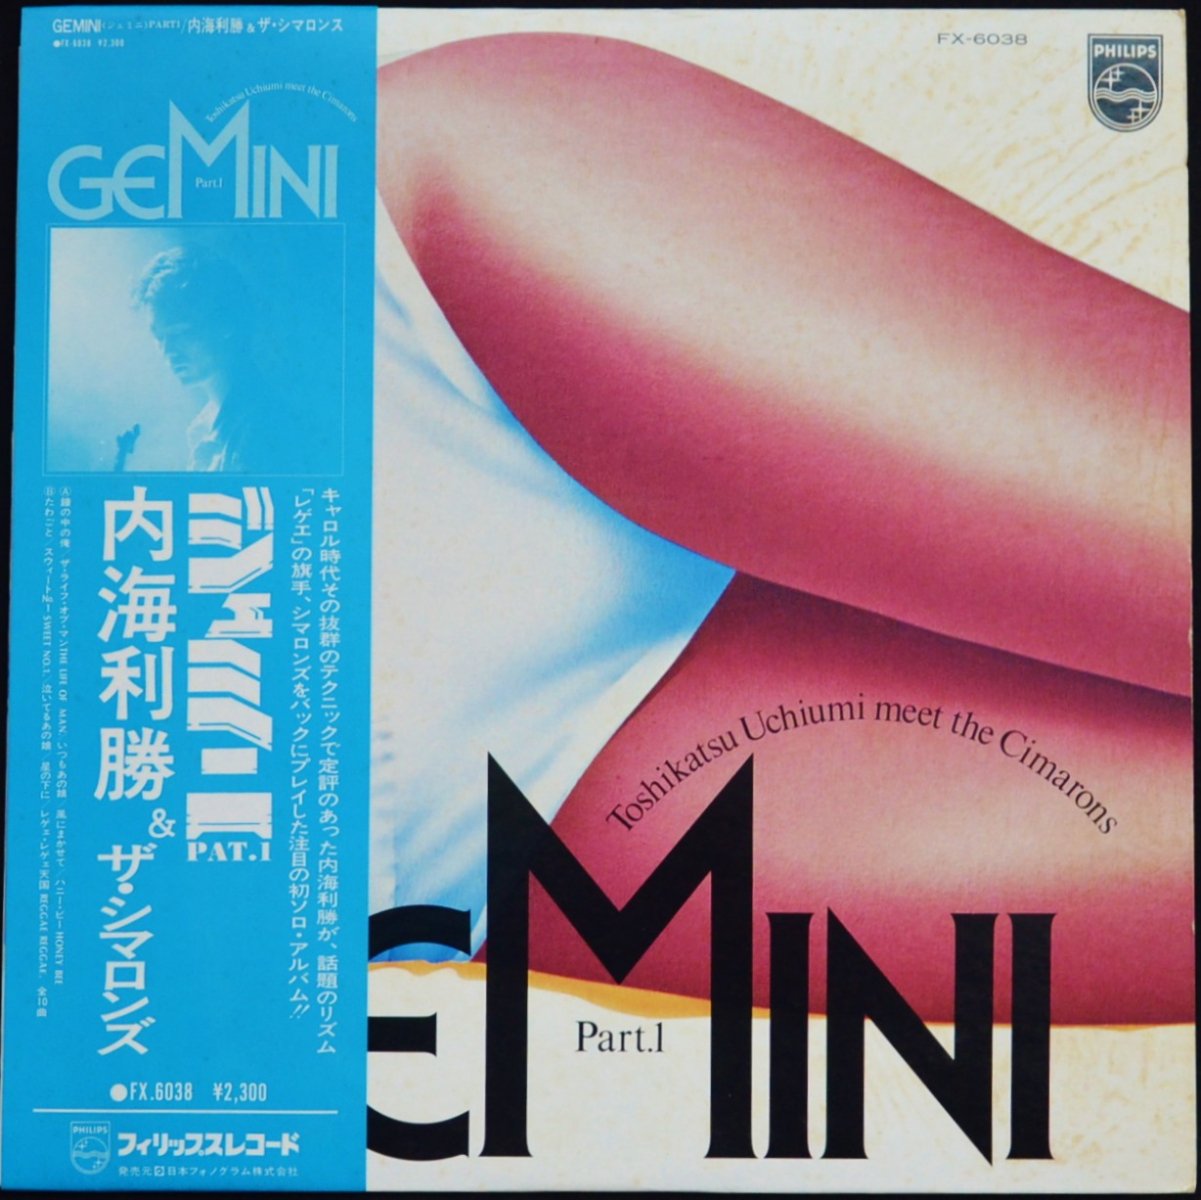 内海利勝 & ザ・シマロンズ TOSHIKATSU UCHIUMI & THE CIMARONS / ジェミニ PART 1 GEMINI PART 1 (LP)